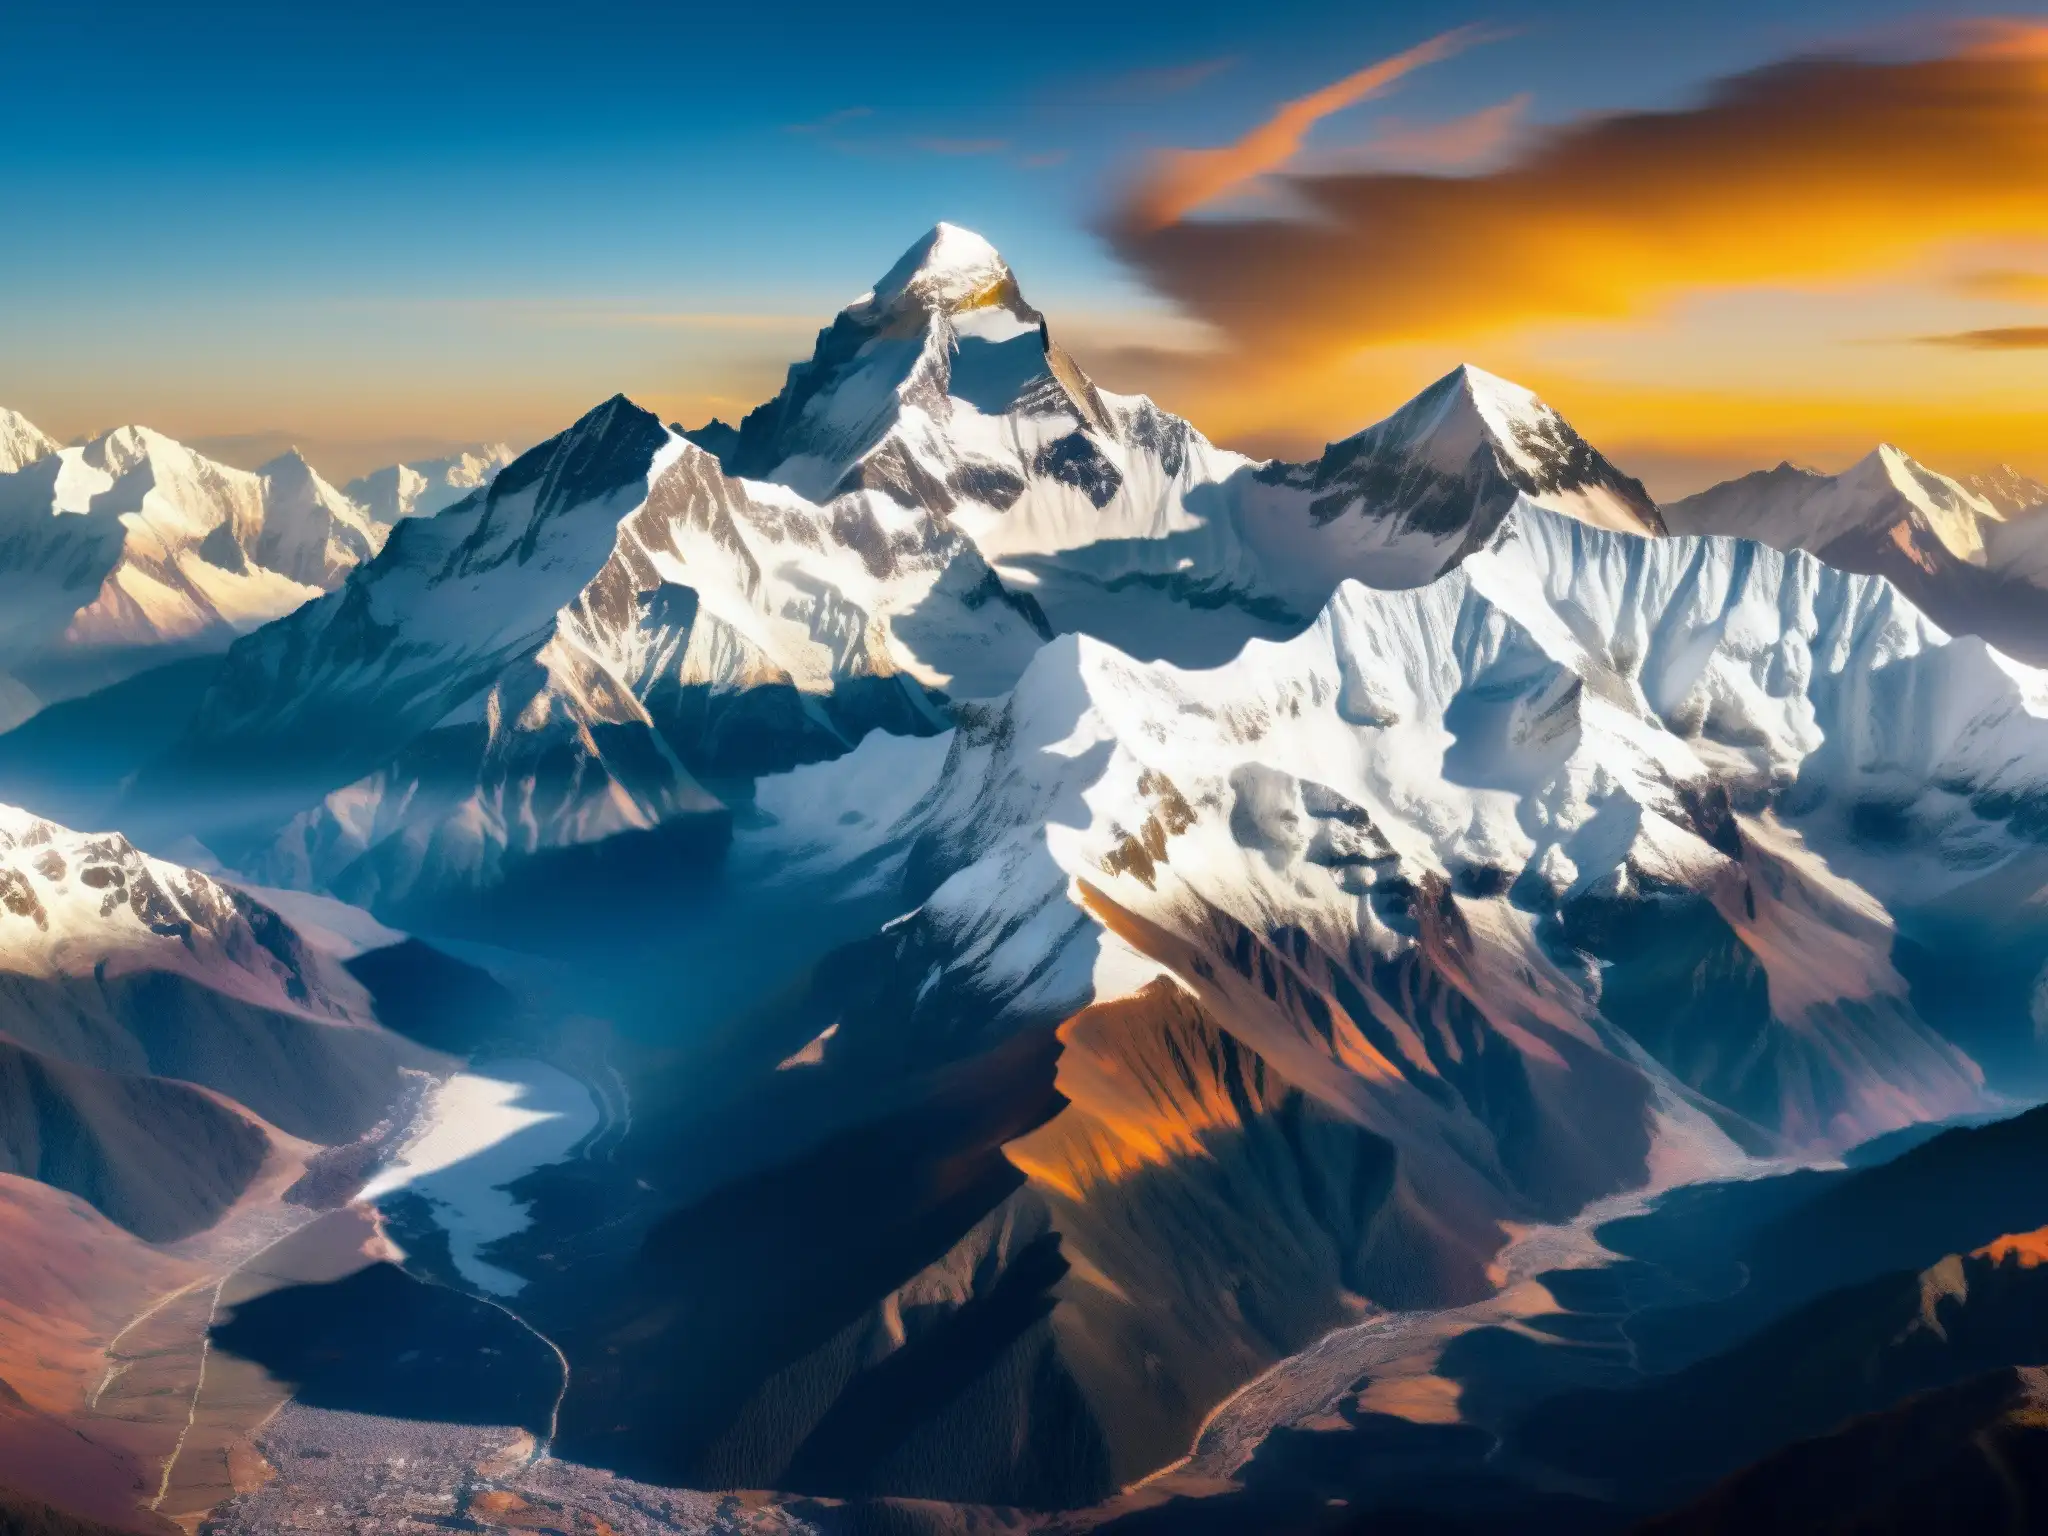 Dama de Blanco Nepal mito: Majestuosas montañas nevadas al atardecer, bañadas en cálida luz dorada, reflejando la belleza serena del paisaje nepalés